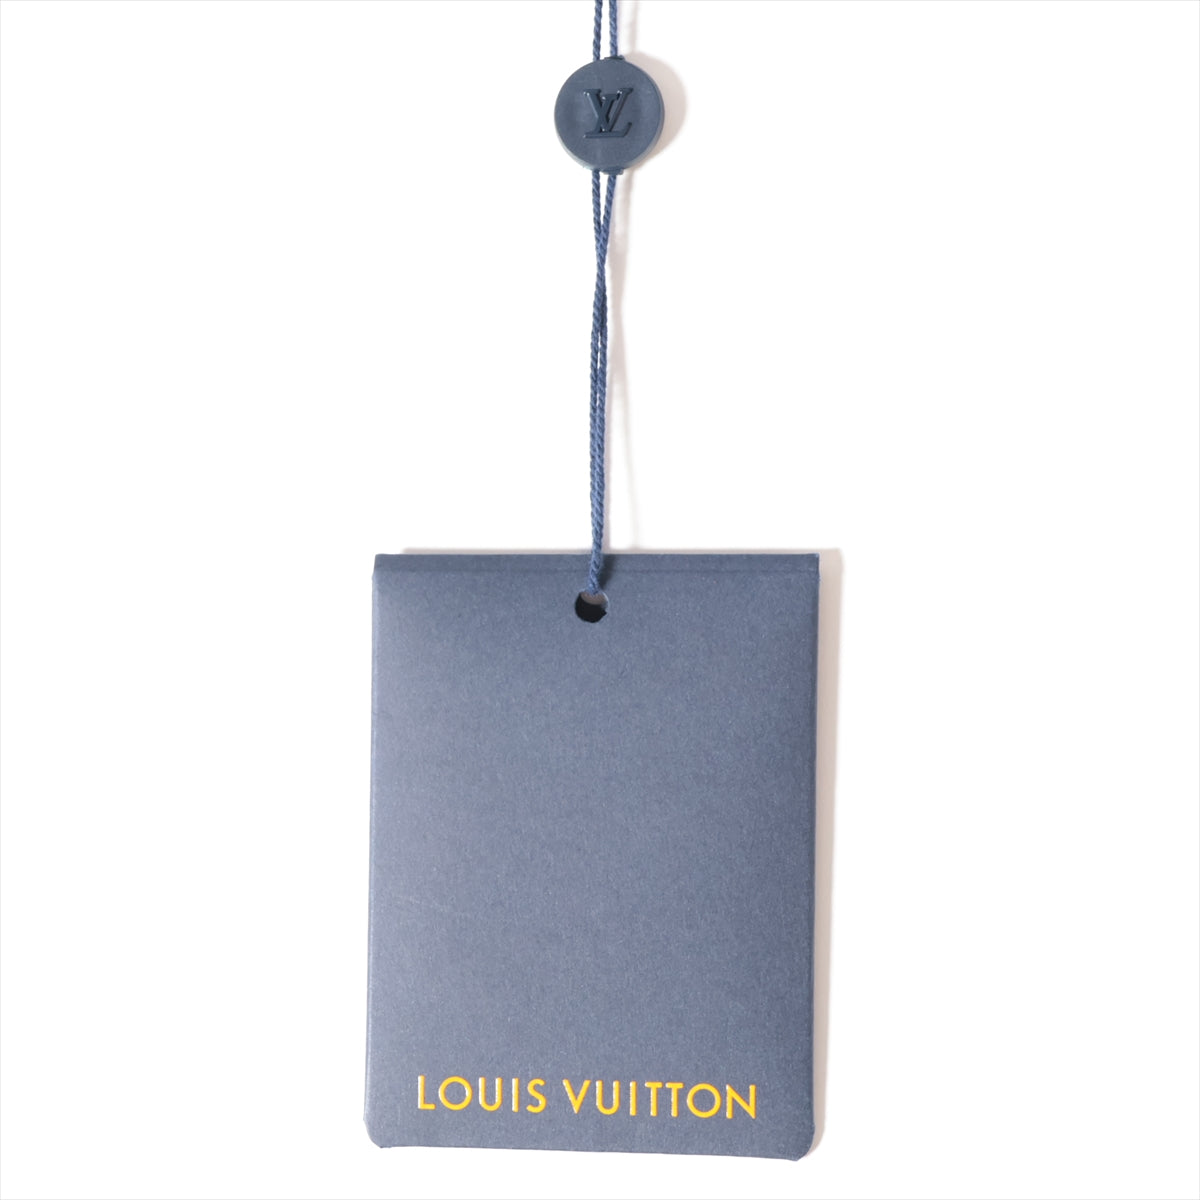 Louis Vuitton 23SS Cotton Denim Jacket 46  Blue RM231M Monogram